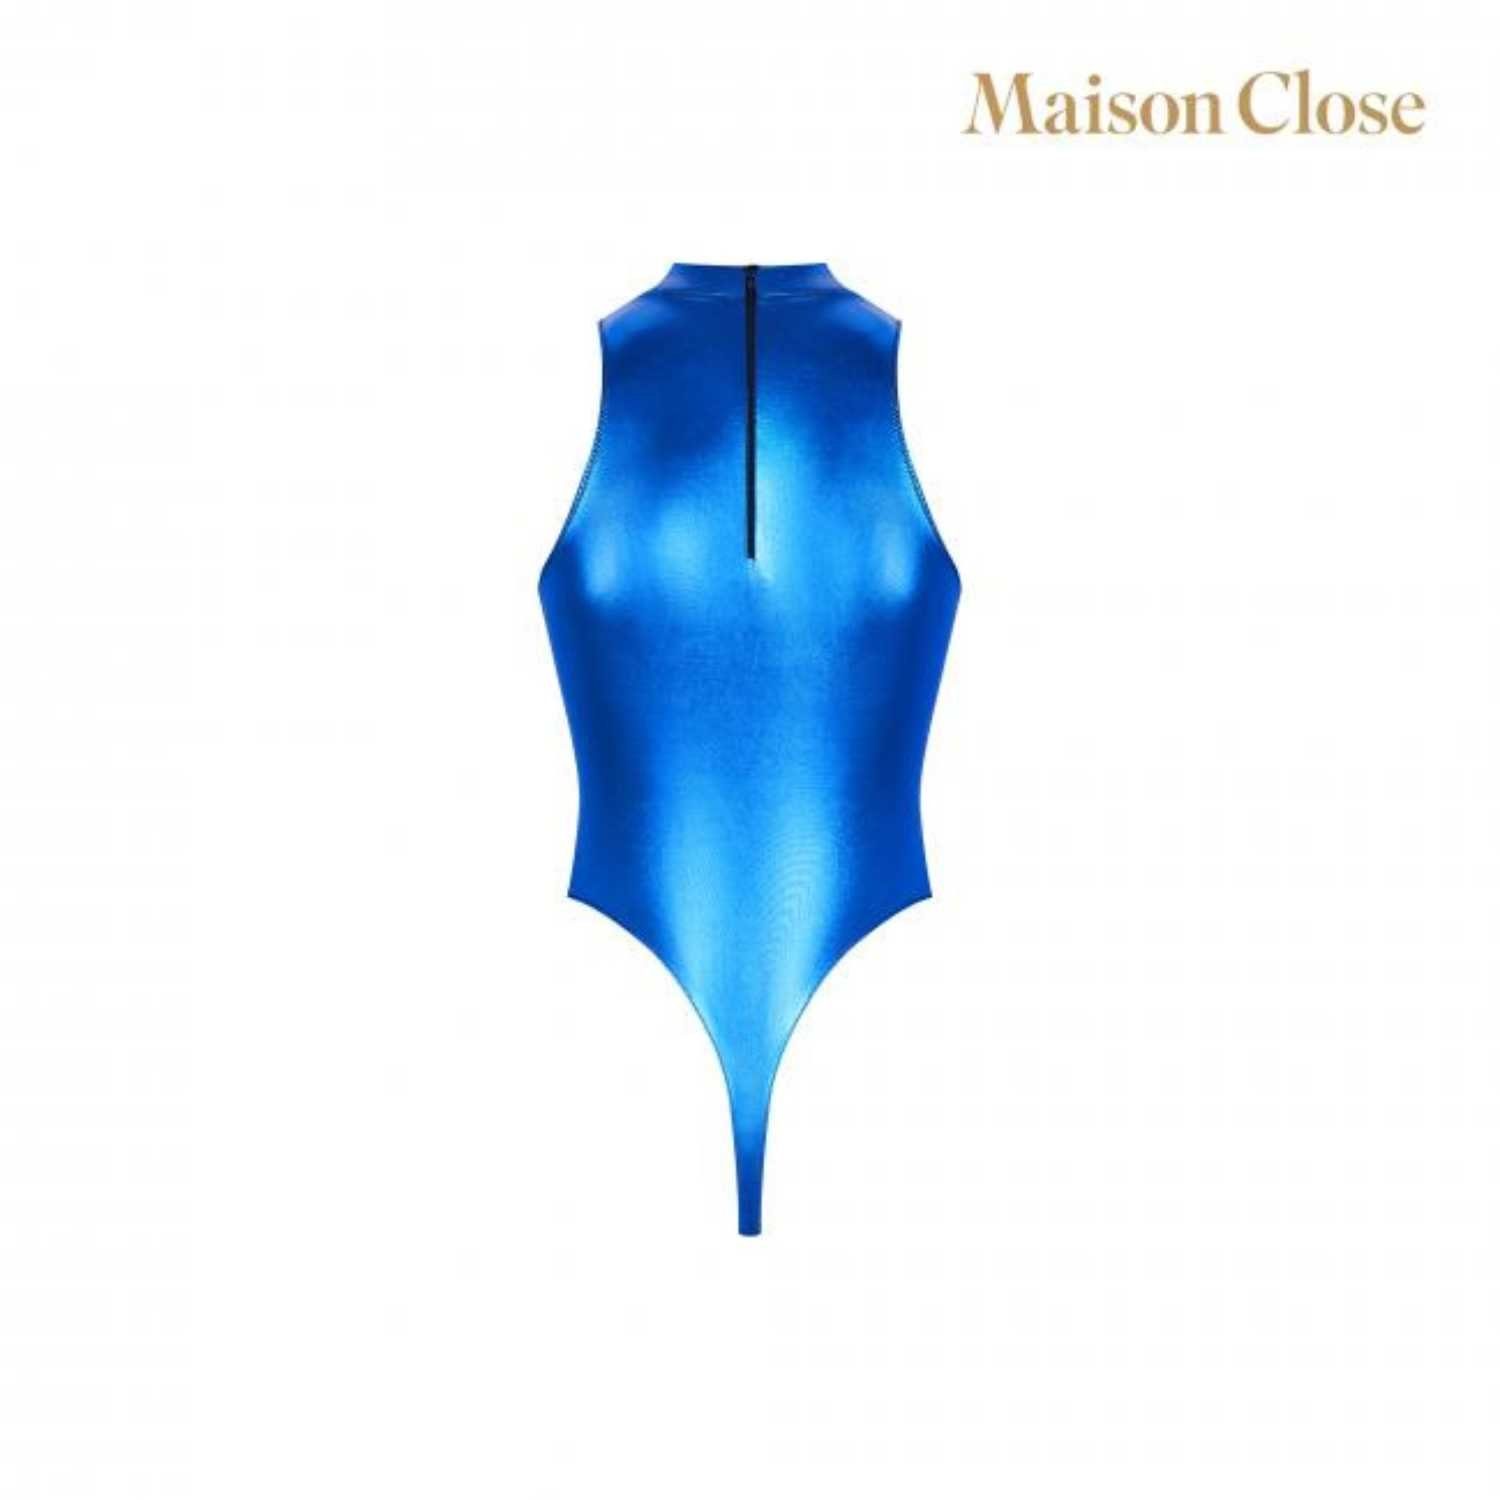 Maison Close Angel Close Body, Blue Maison Stringbody String